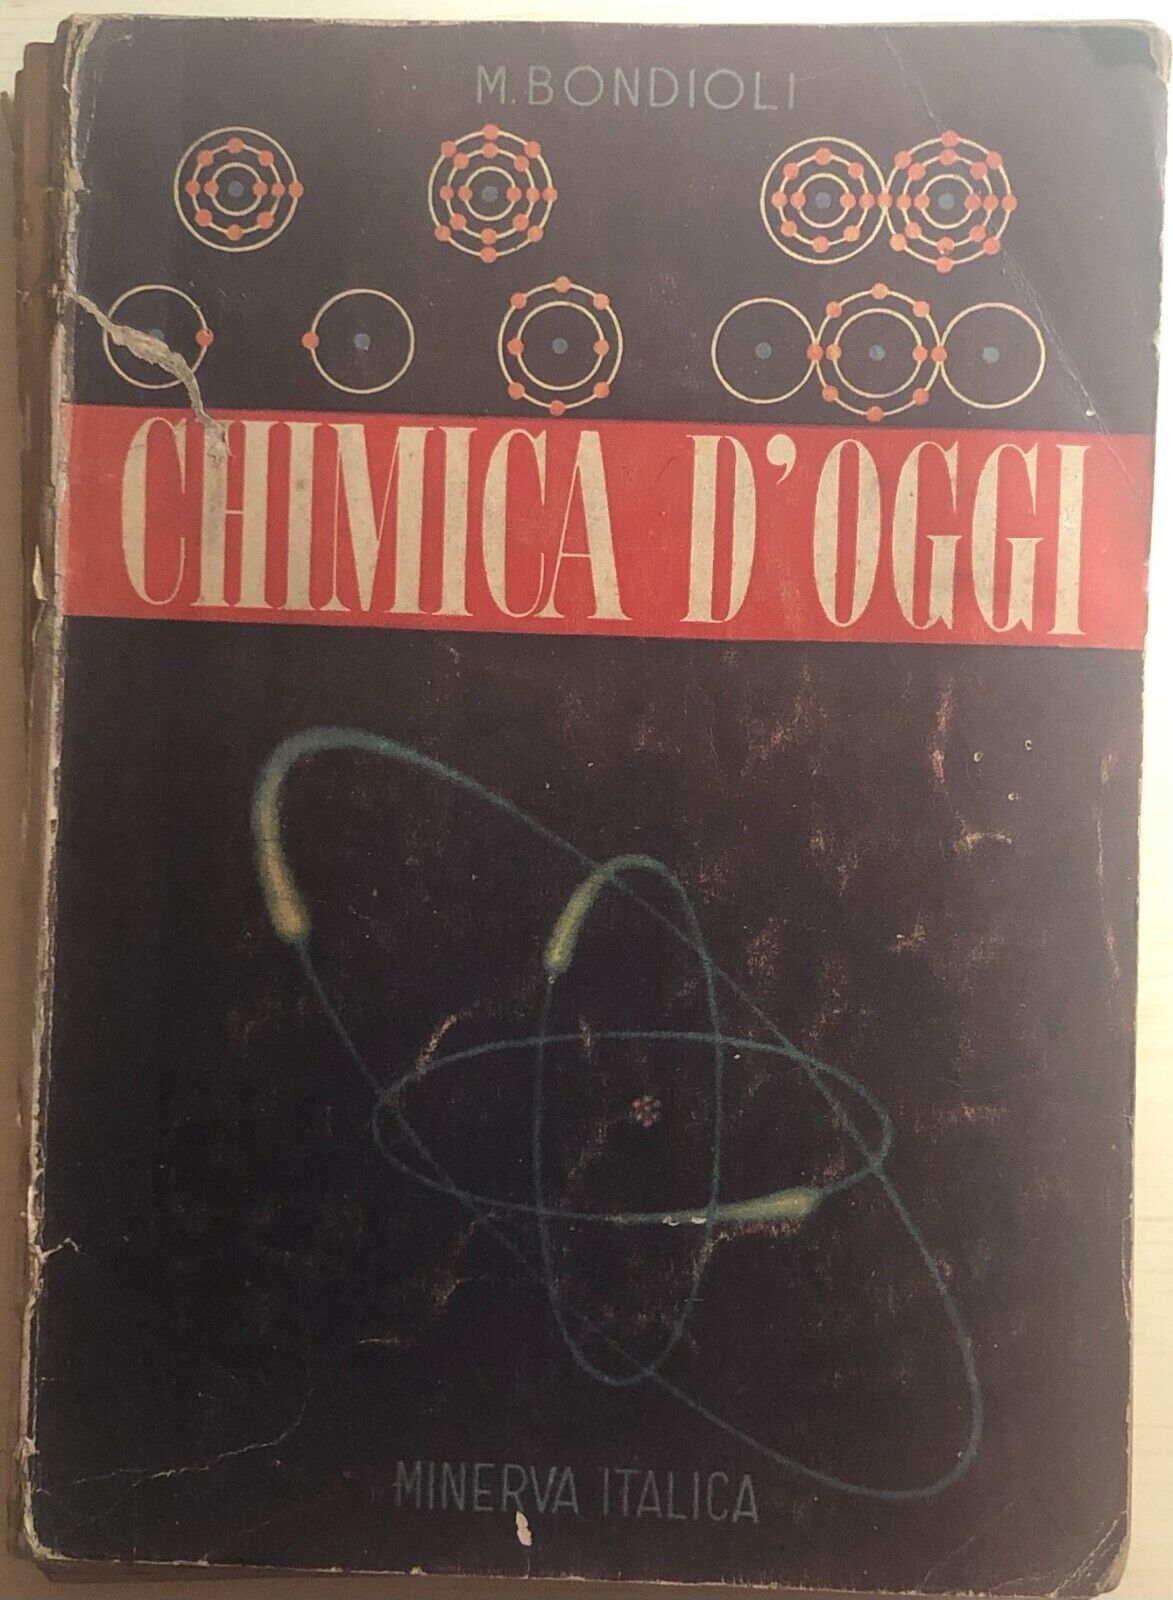 Chimica d'oggi di M. Bondioli,  1952,  Minerva Italica